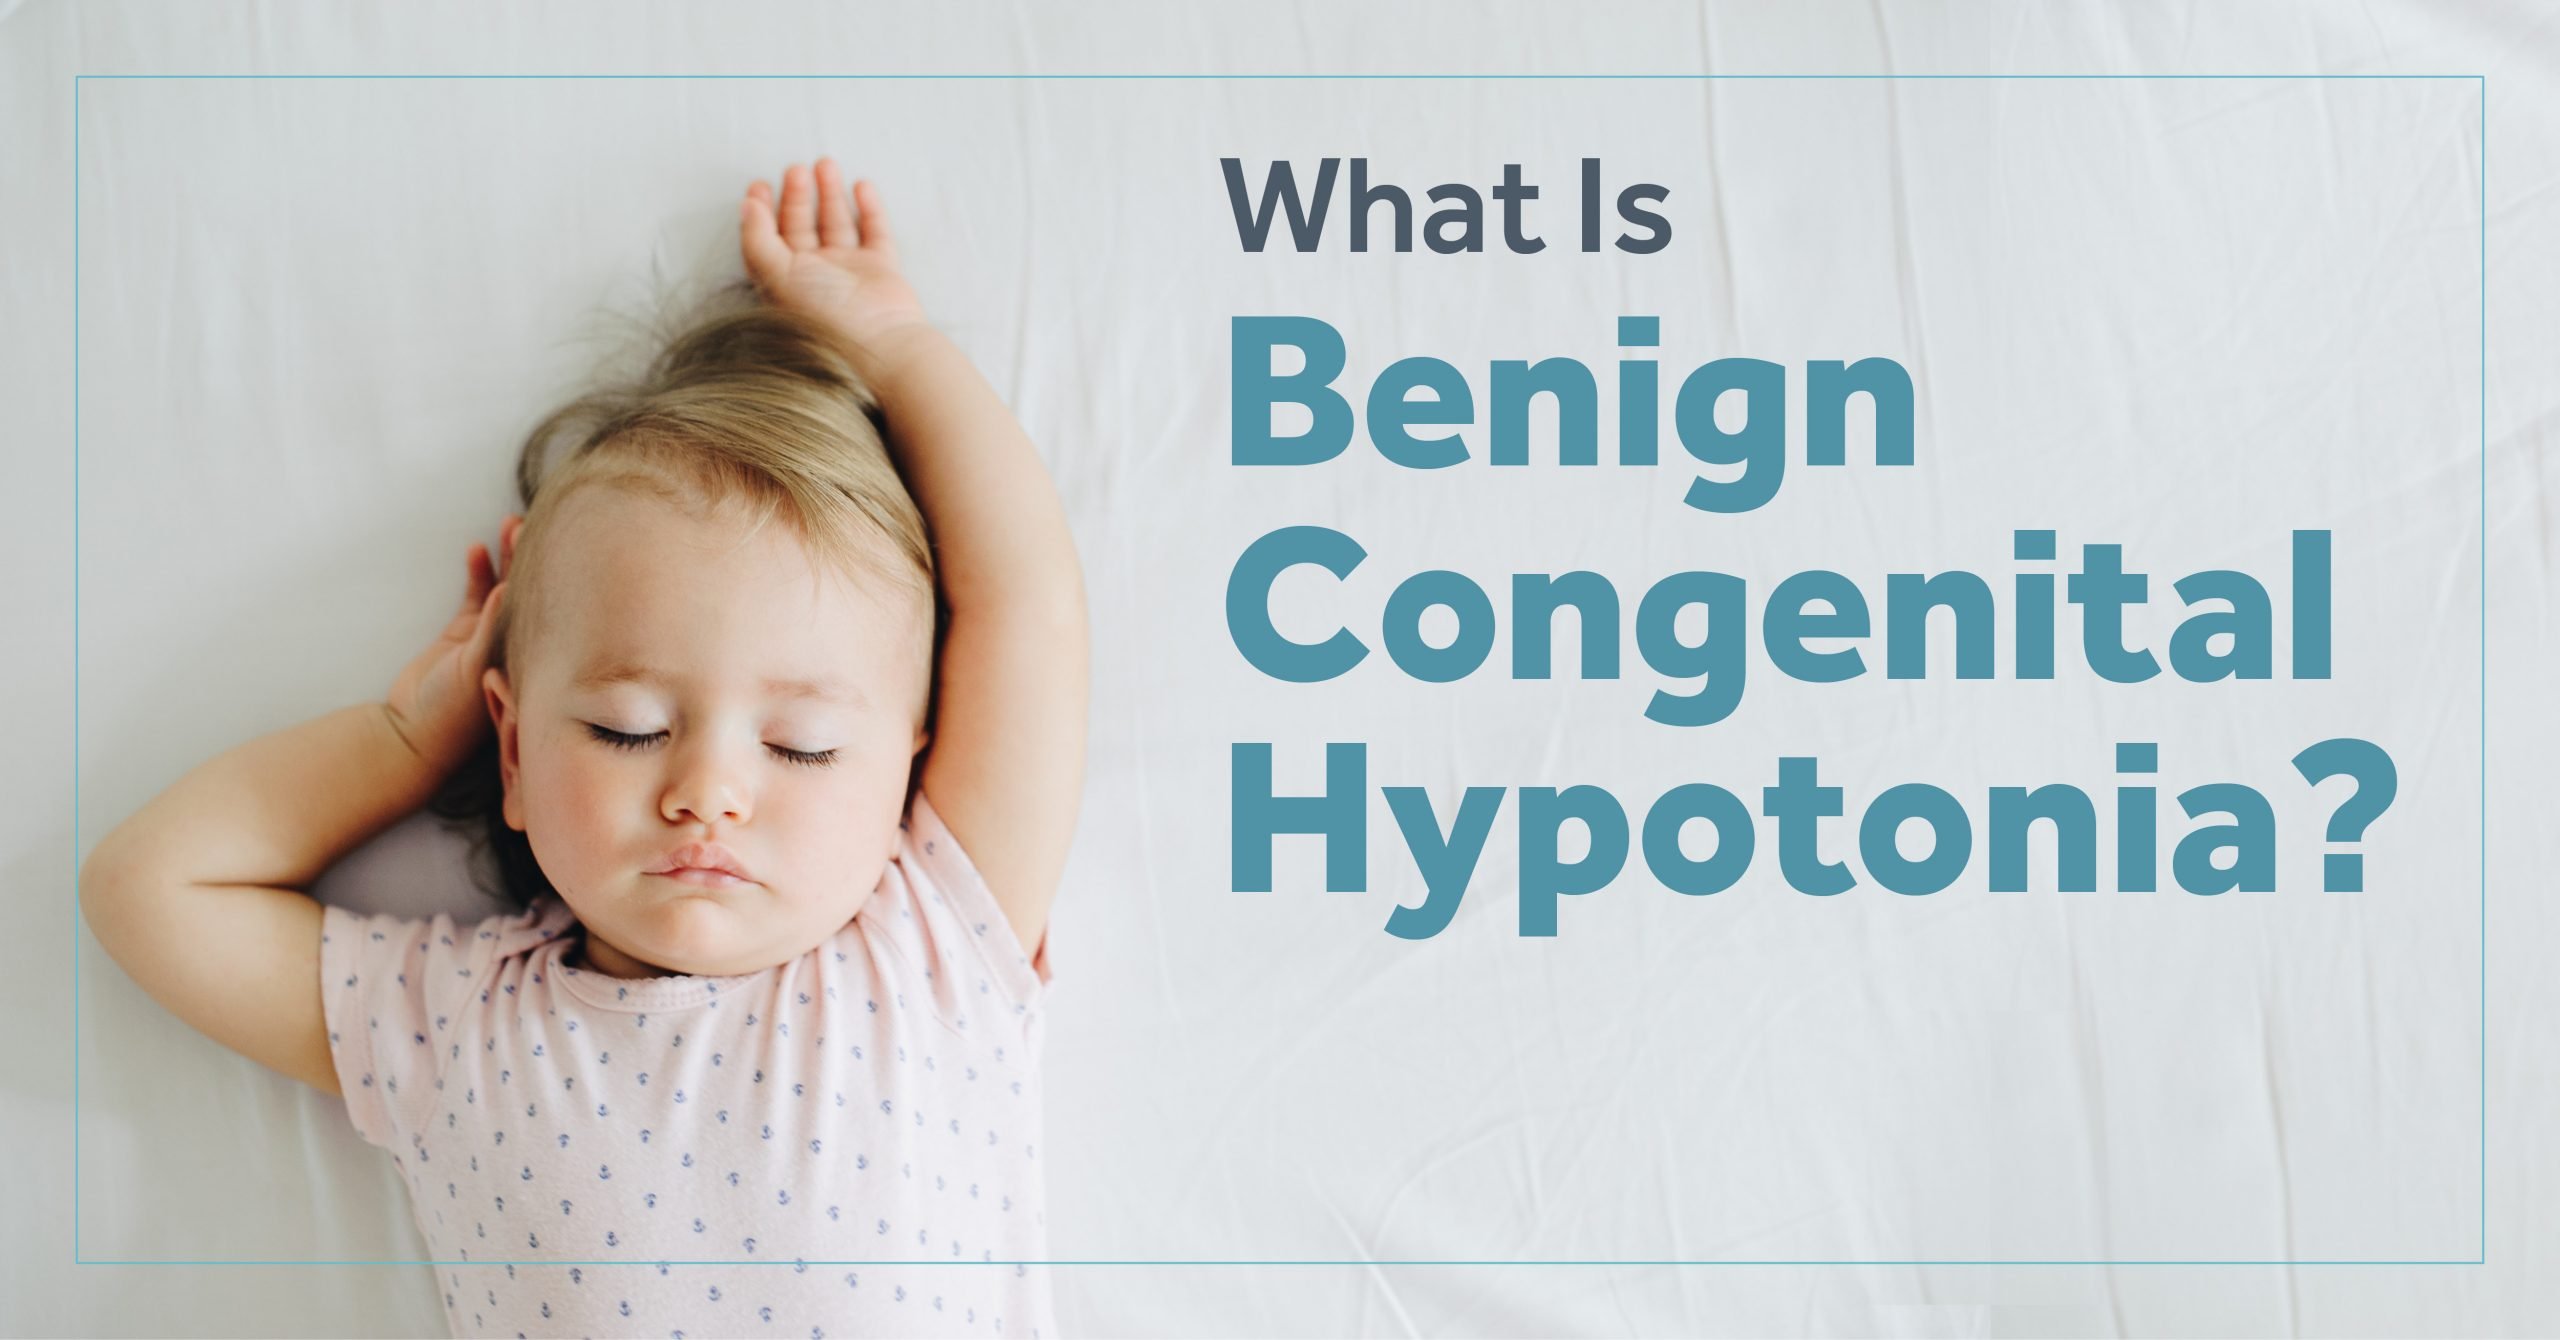 Benign Congenital Hypotonia